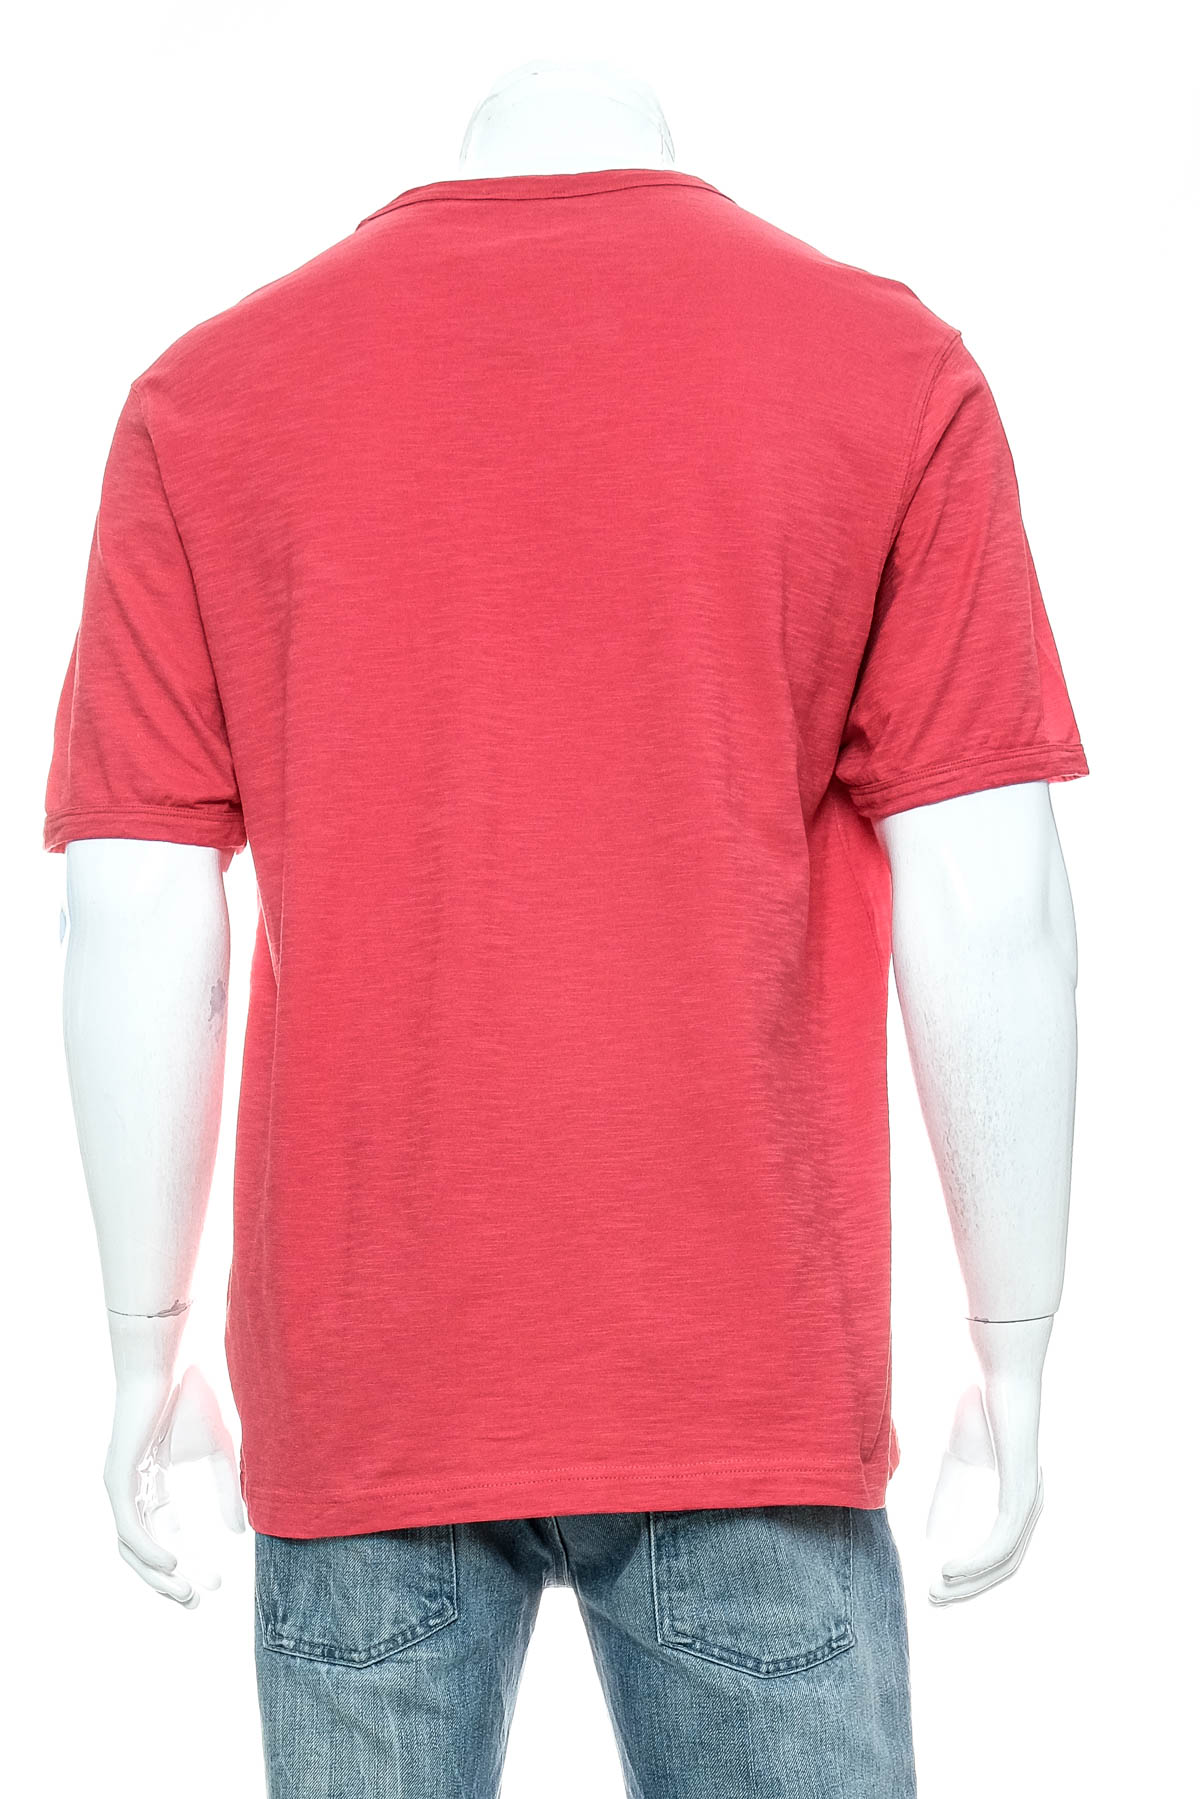 Tricou pentru bărbați - United Colors of Benetton - 1